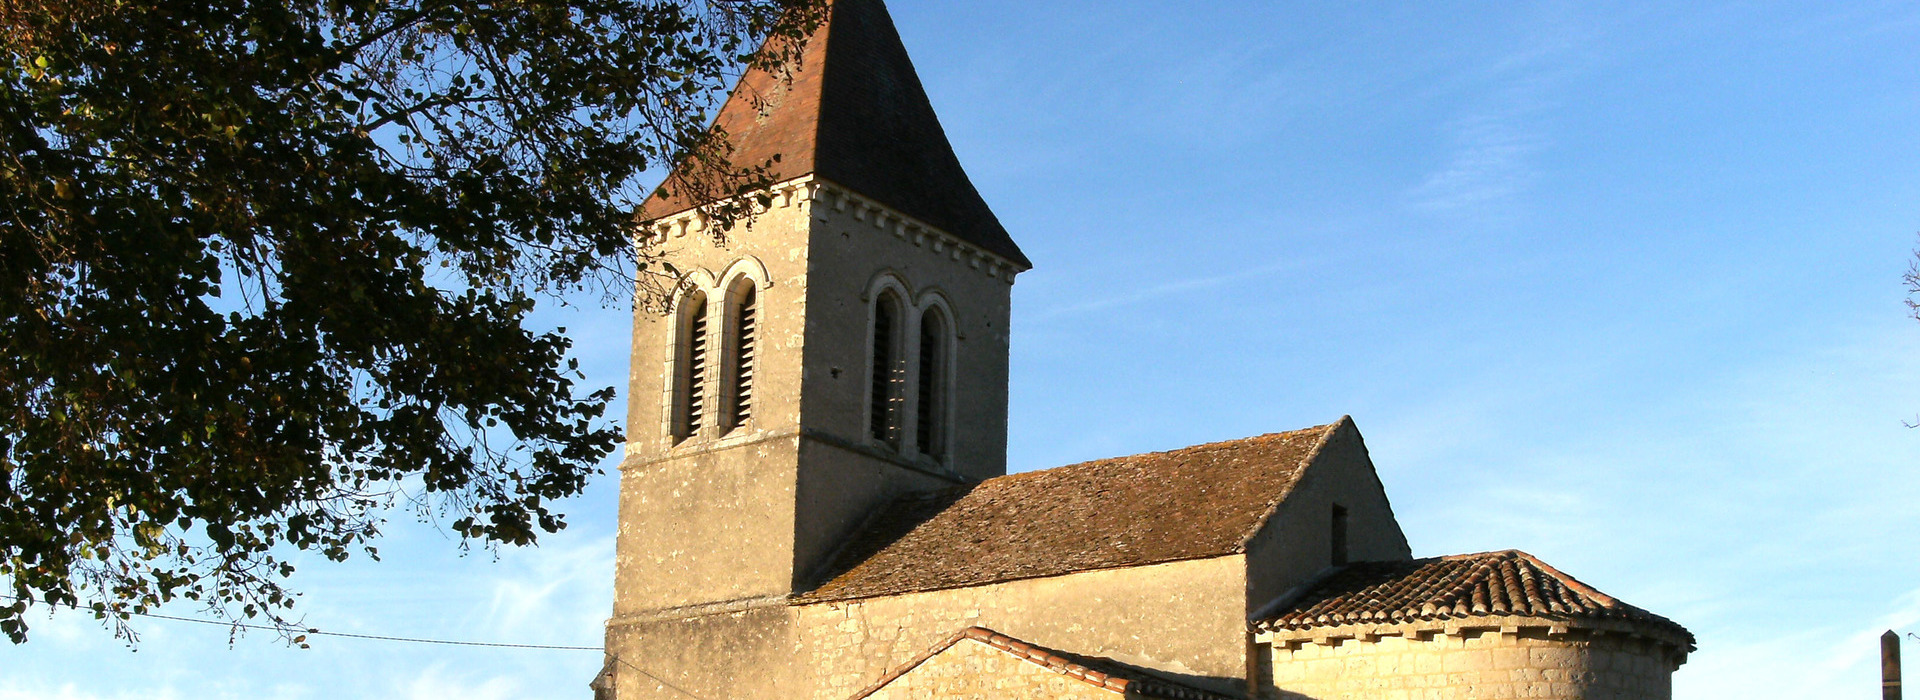 Commune de Parnac - Lot Midi Pyrénées